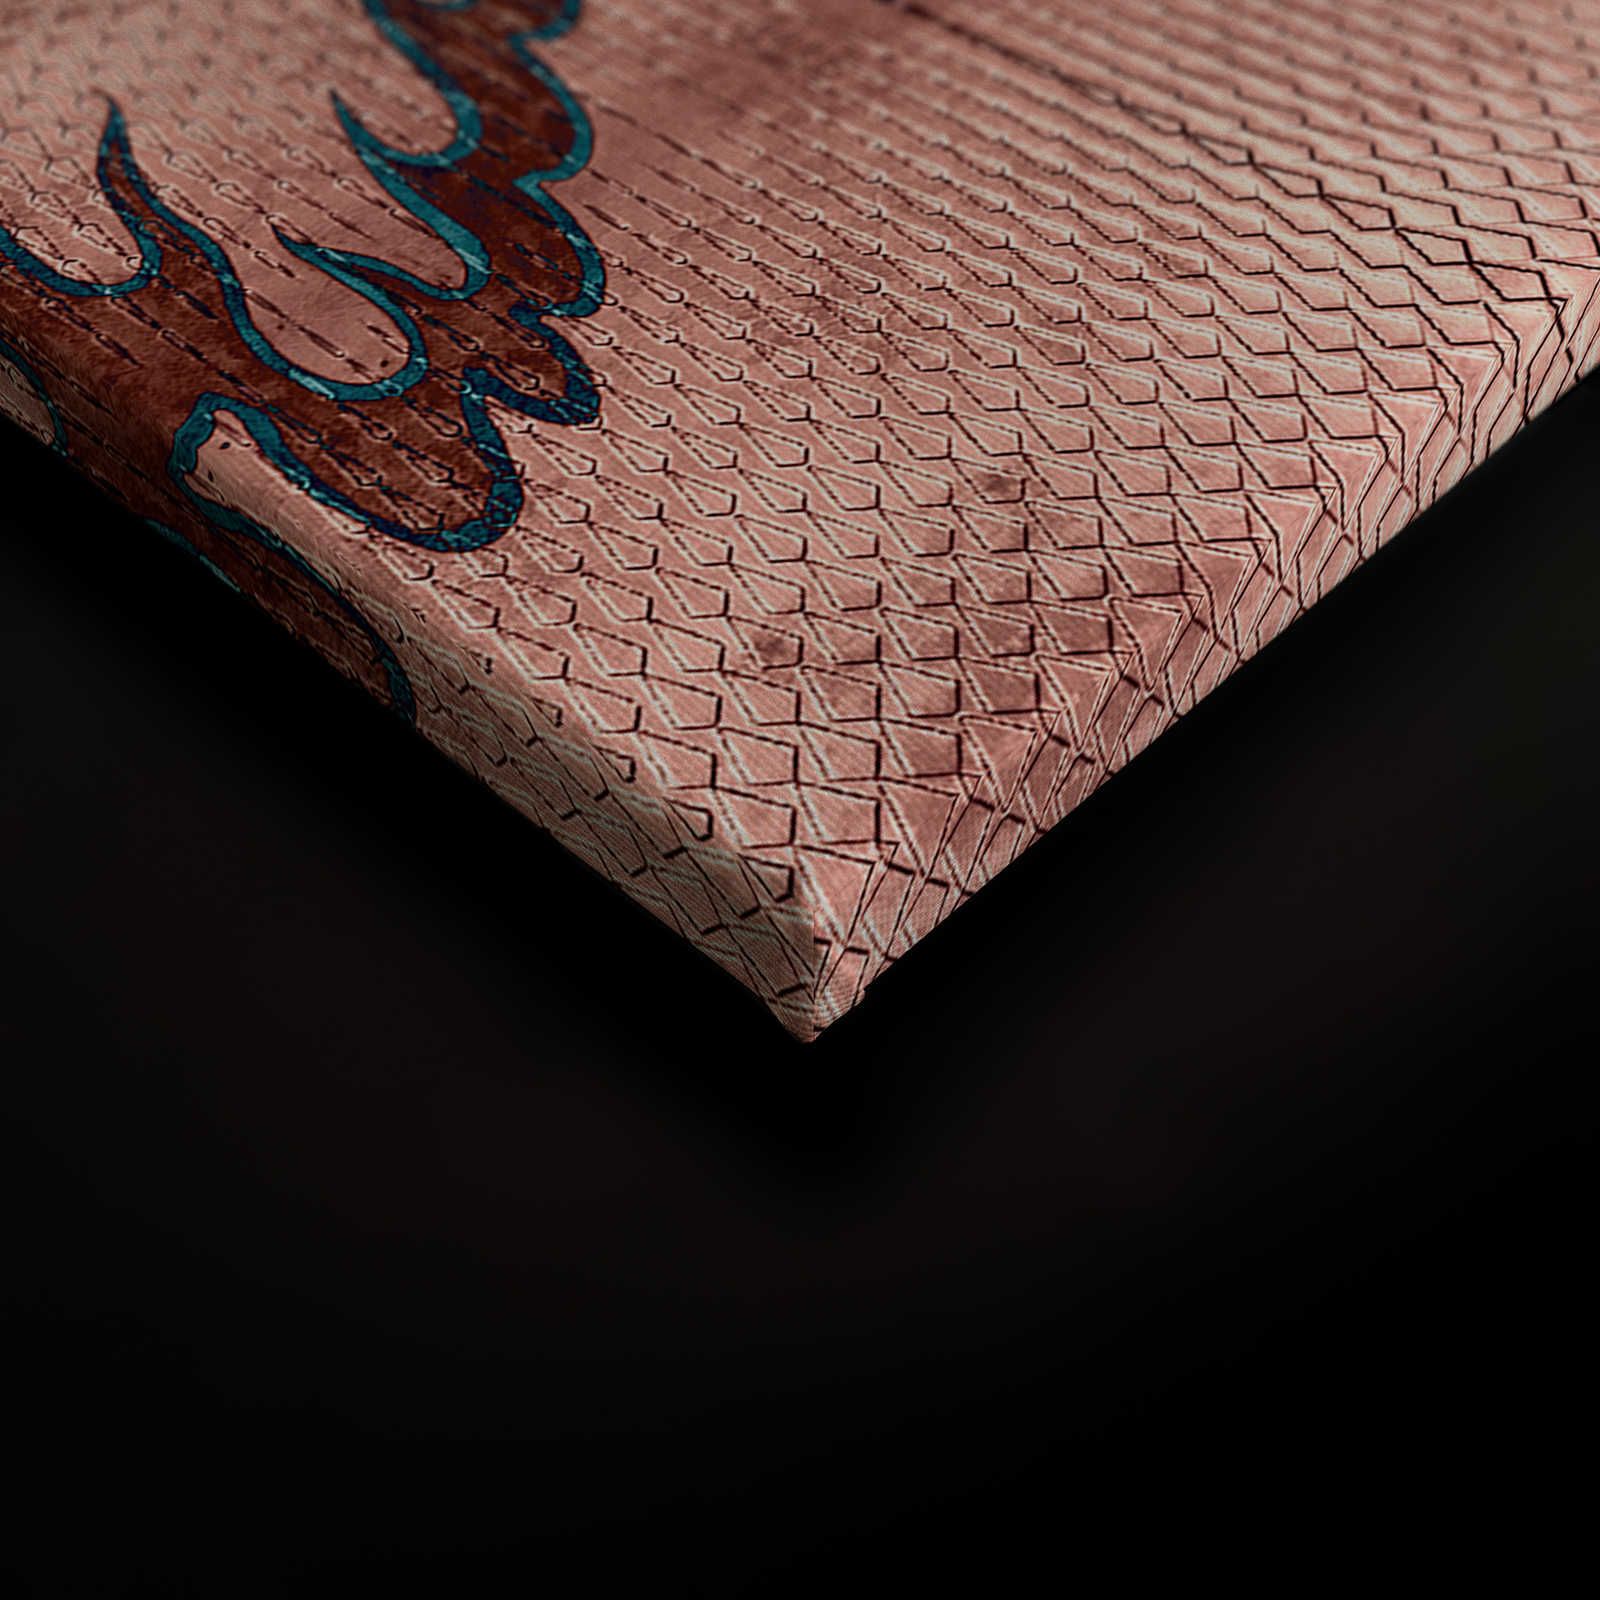             Shenzen 1 - Cuadro en lienzo Dragon Asian Syle con colores metálicos - 0,90 m x 0,60 m
        